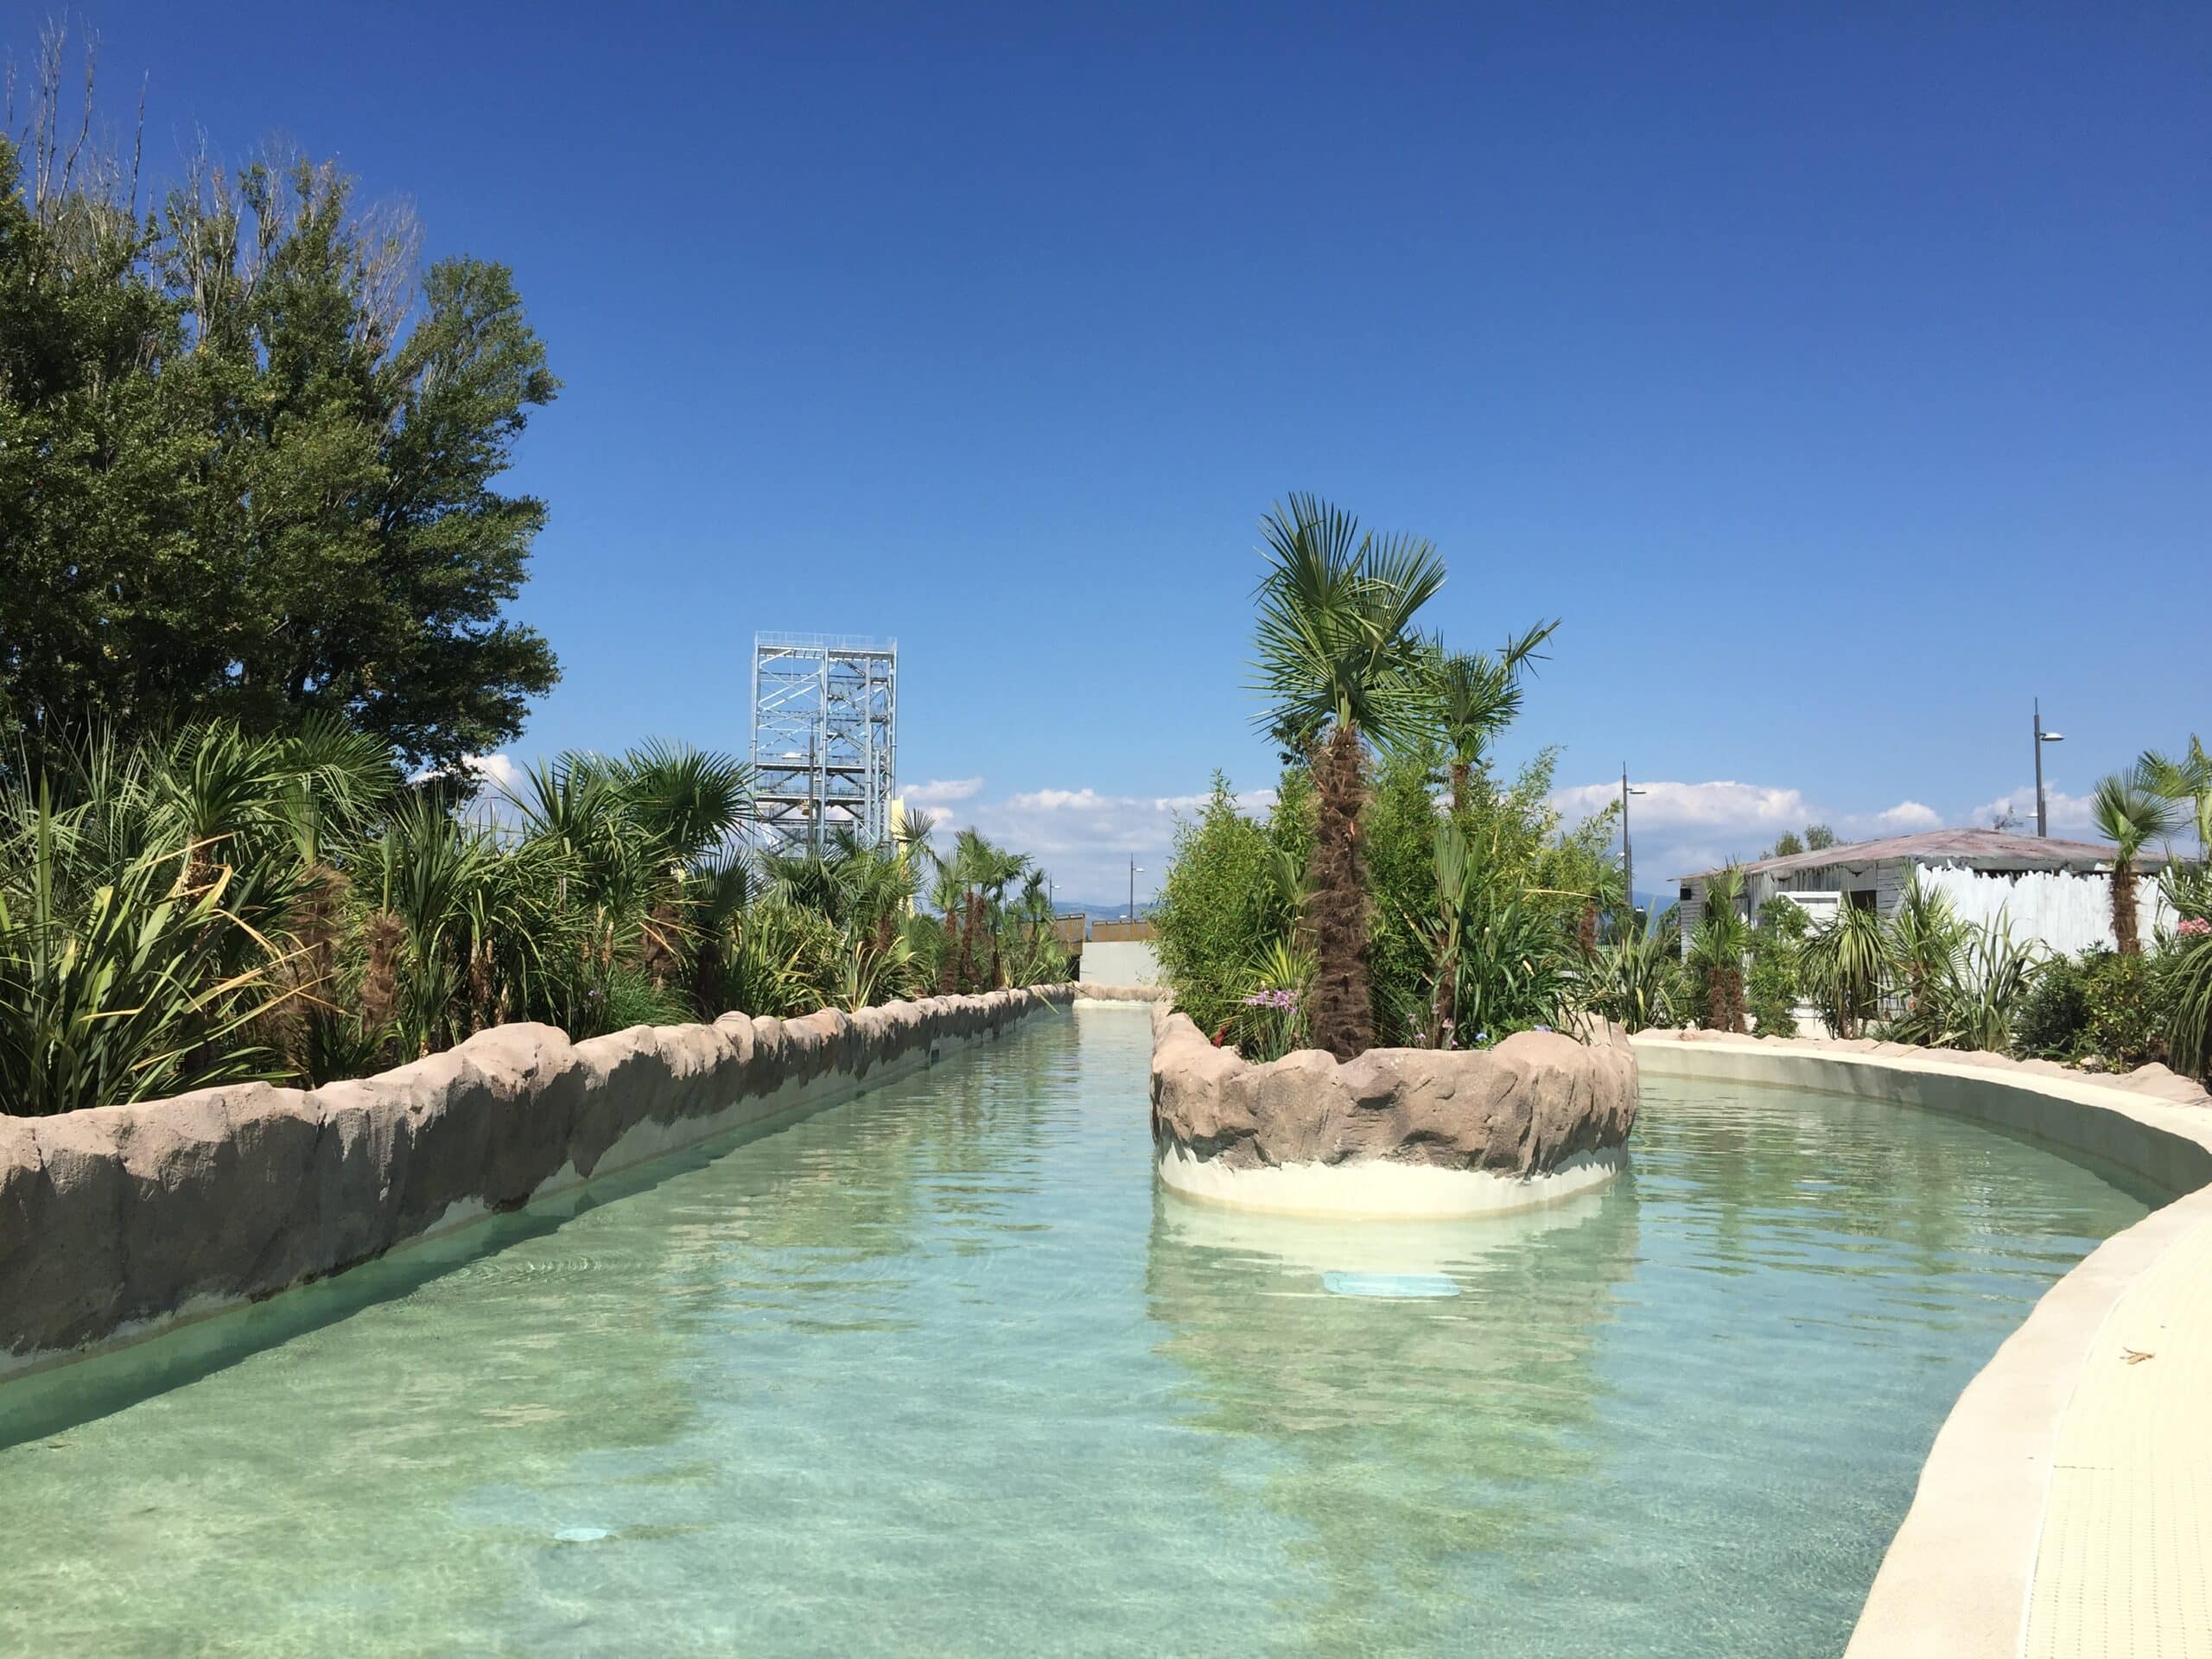 , [Splashworld Provence] Le plus grand parc aquatique d&rsquo;Europe est en Provence, Made in Marseille